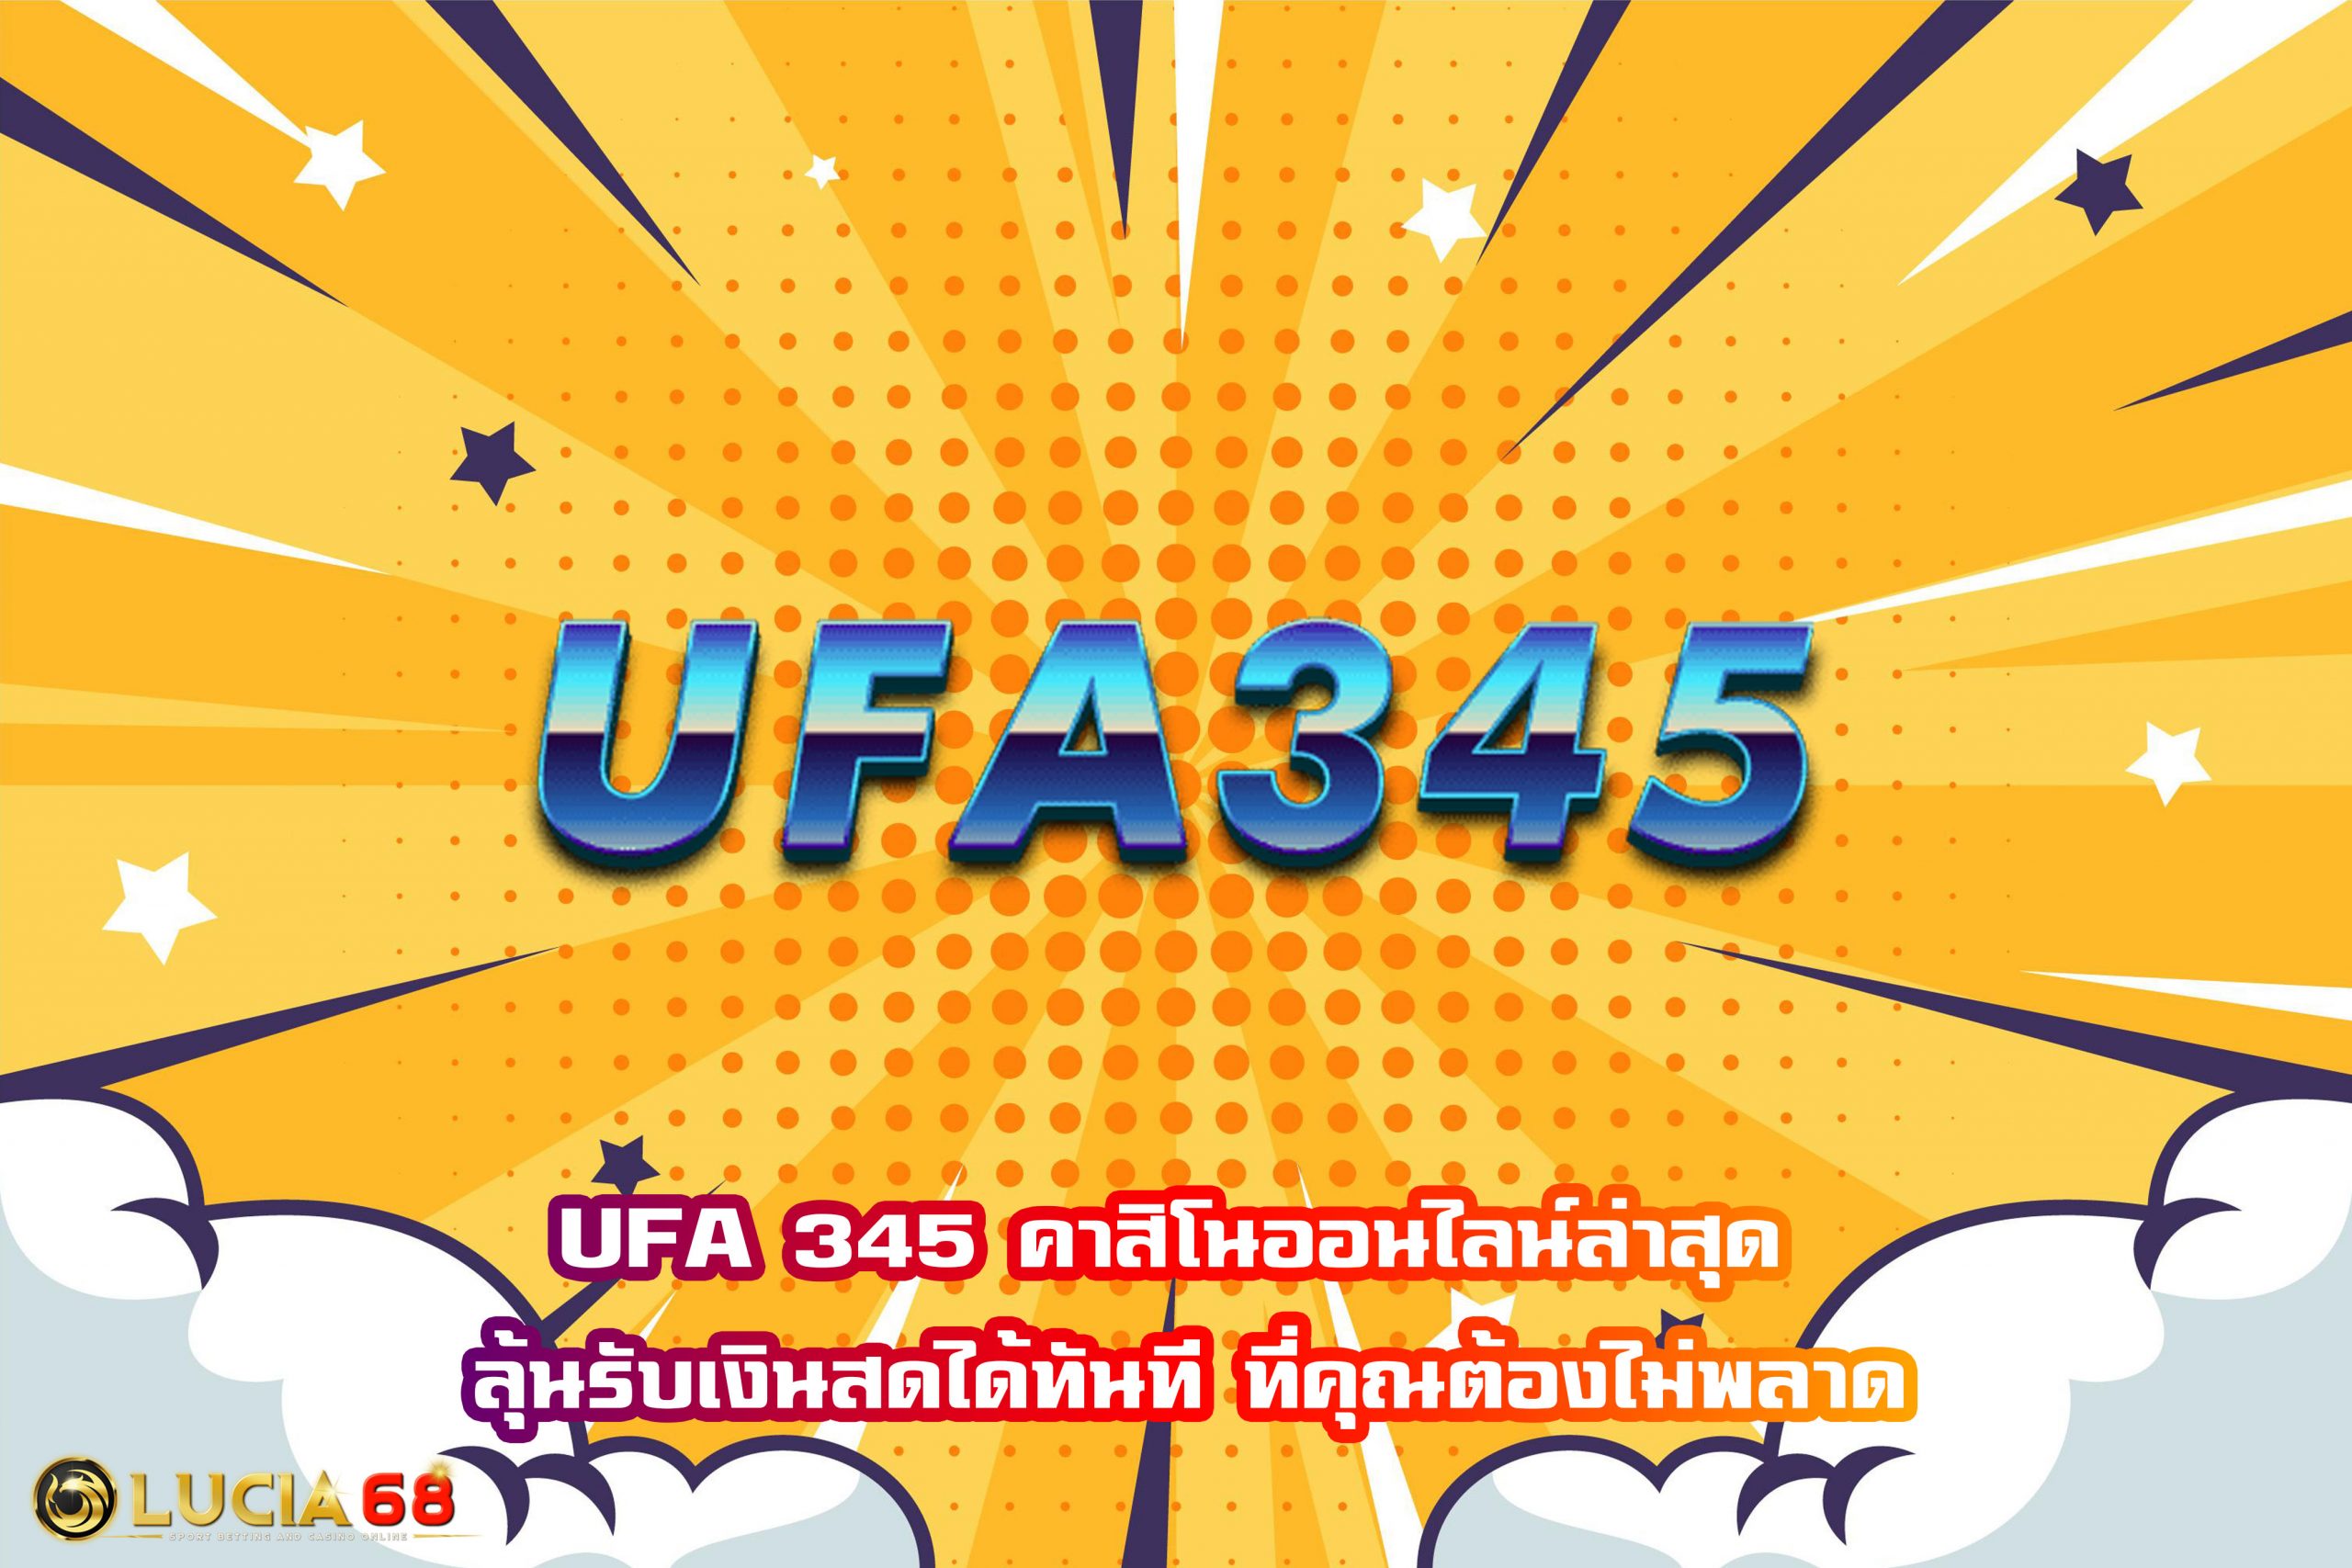 UFA 345 คาสิโนออนไลน์ล่าสุด ลุ้นรับเงินสดได้ทันที ที่คุณต้องไม่พลาด